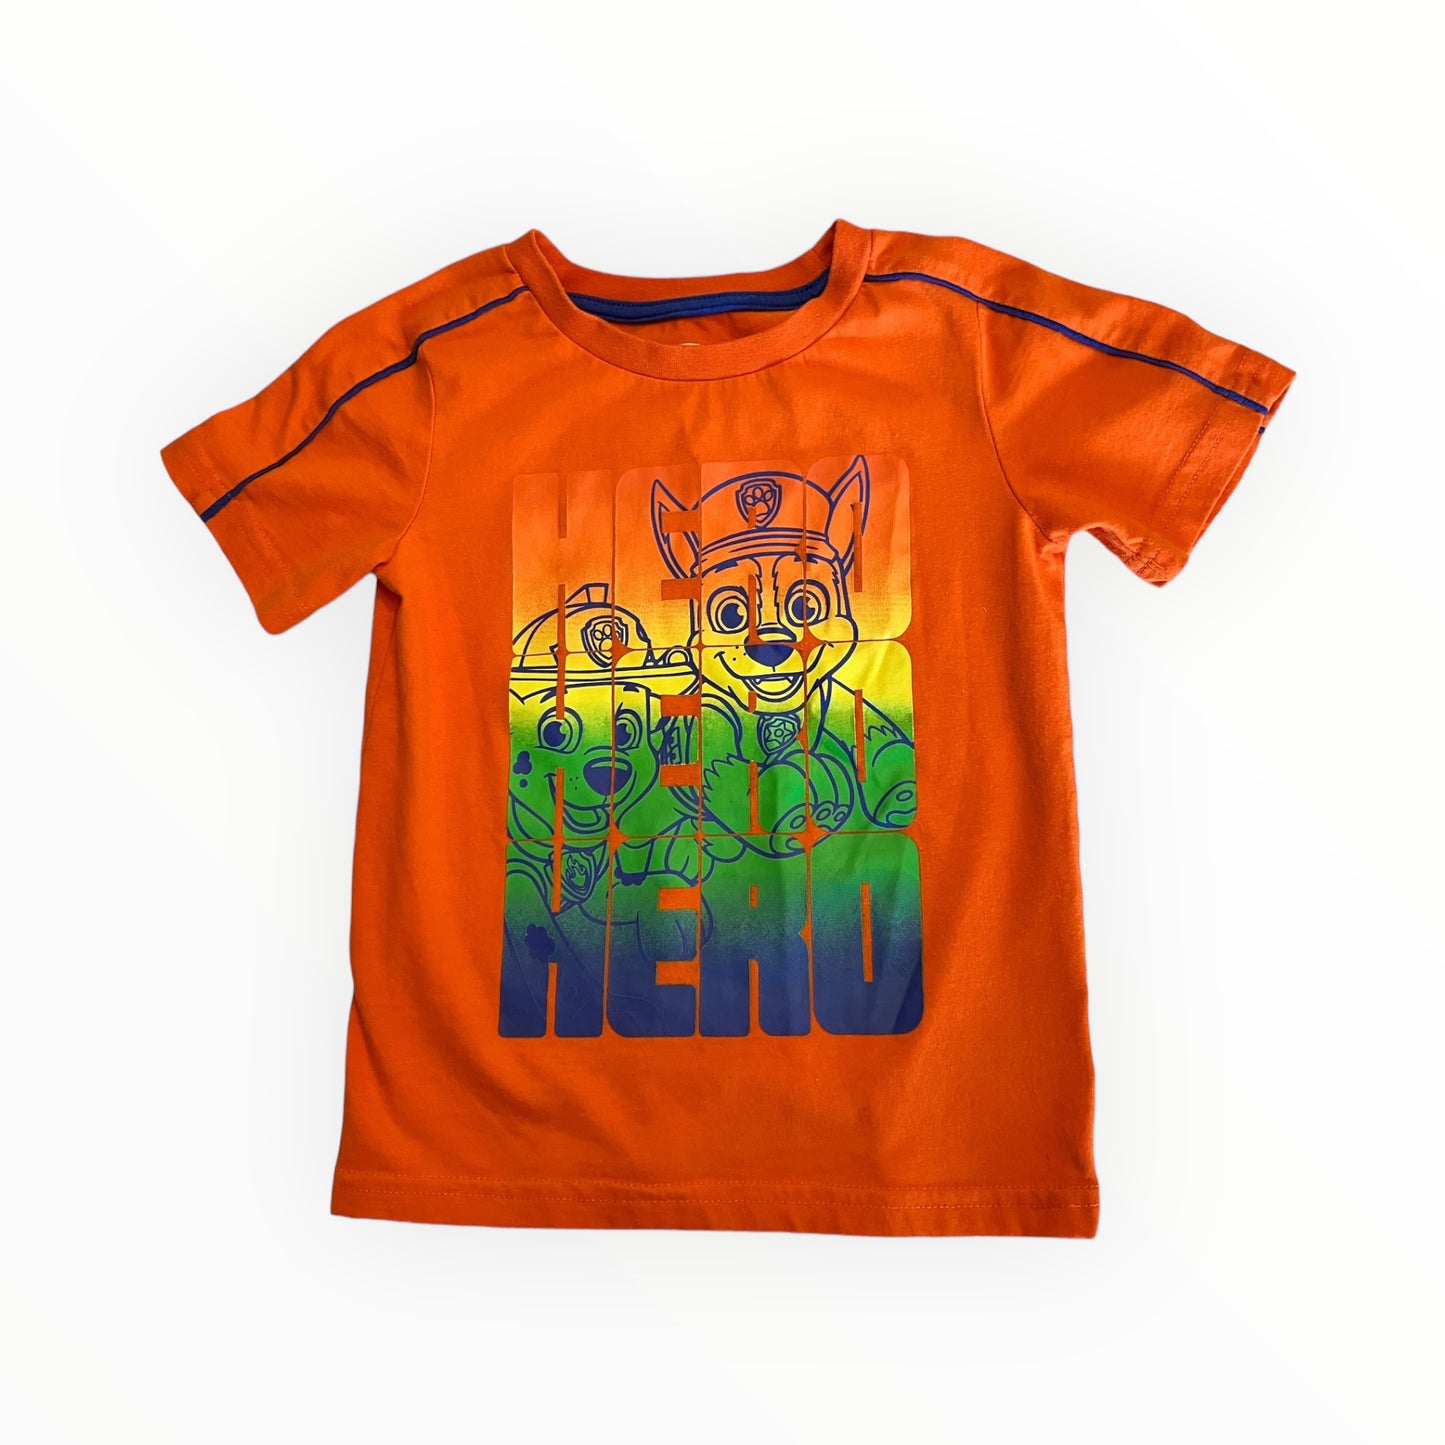 Nickelodeon Paw Patrol Shirt